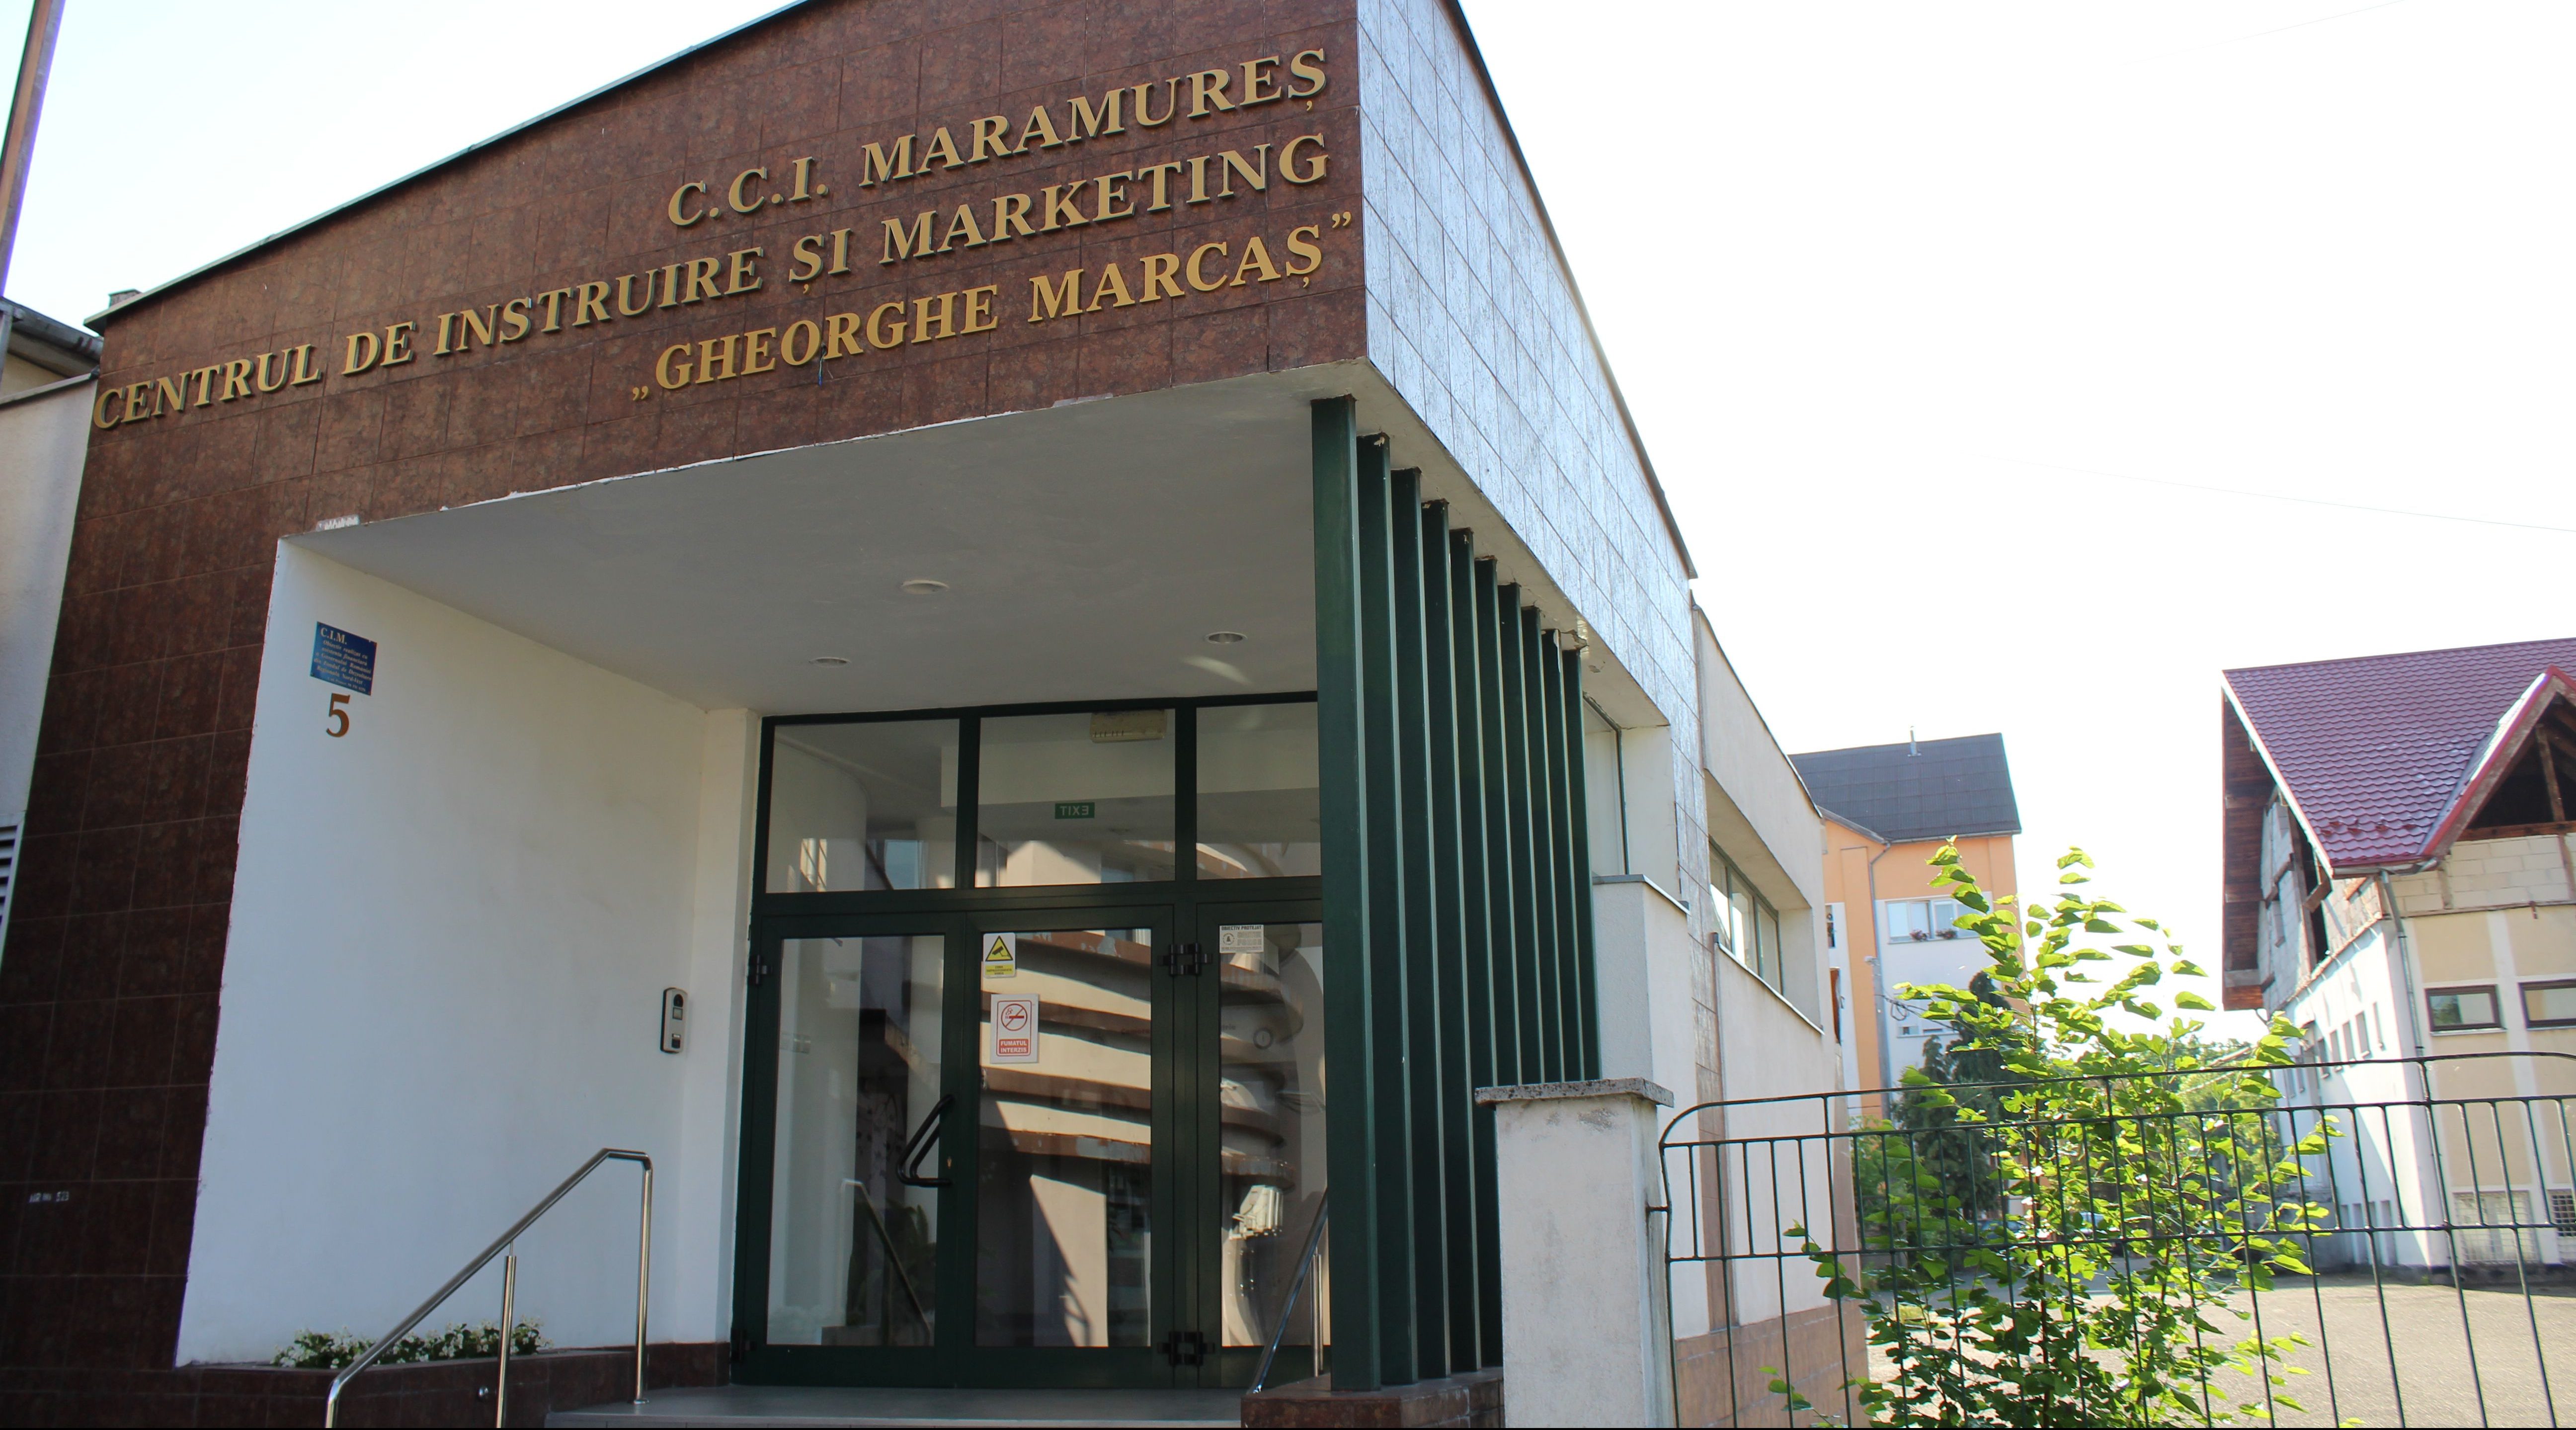 Centrul de Instruire si Marketing "Gheorghe Marcas"